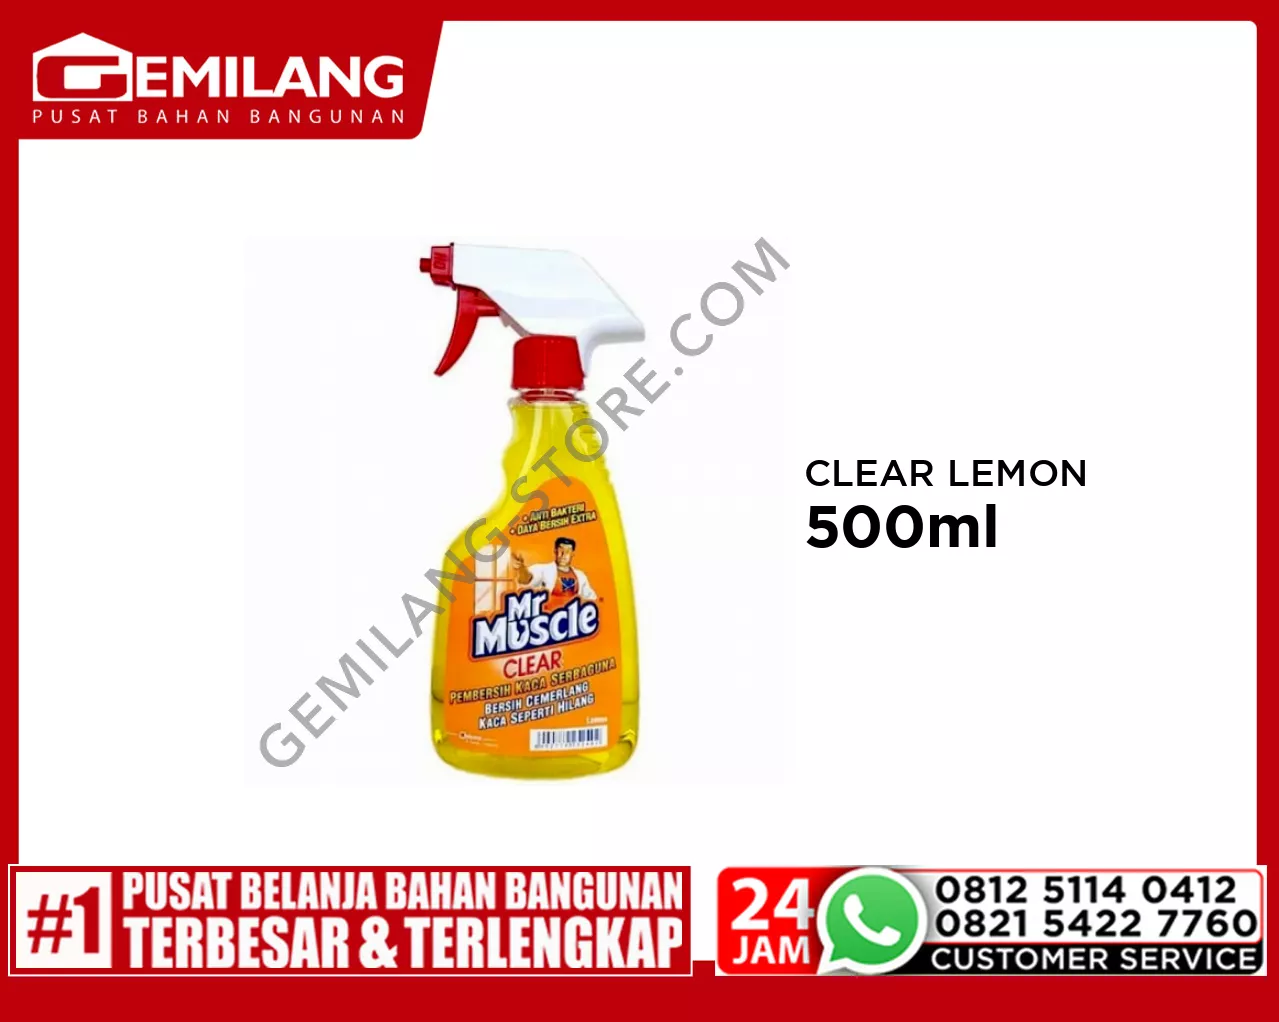 MR MUSCLE CLEAR LEMON 500ml